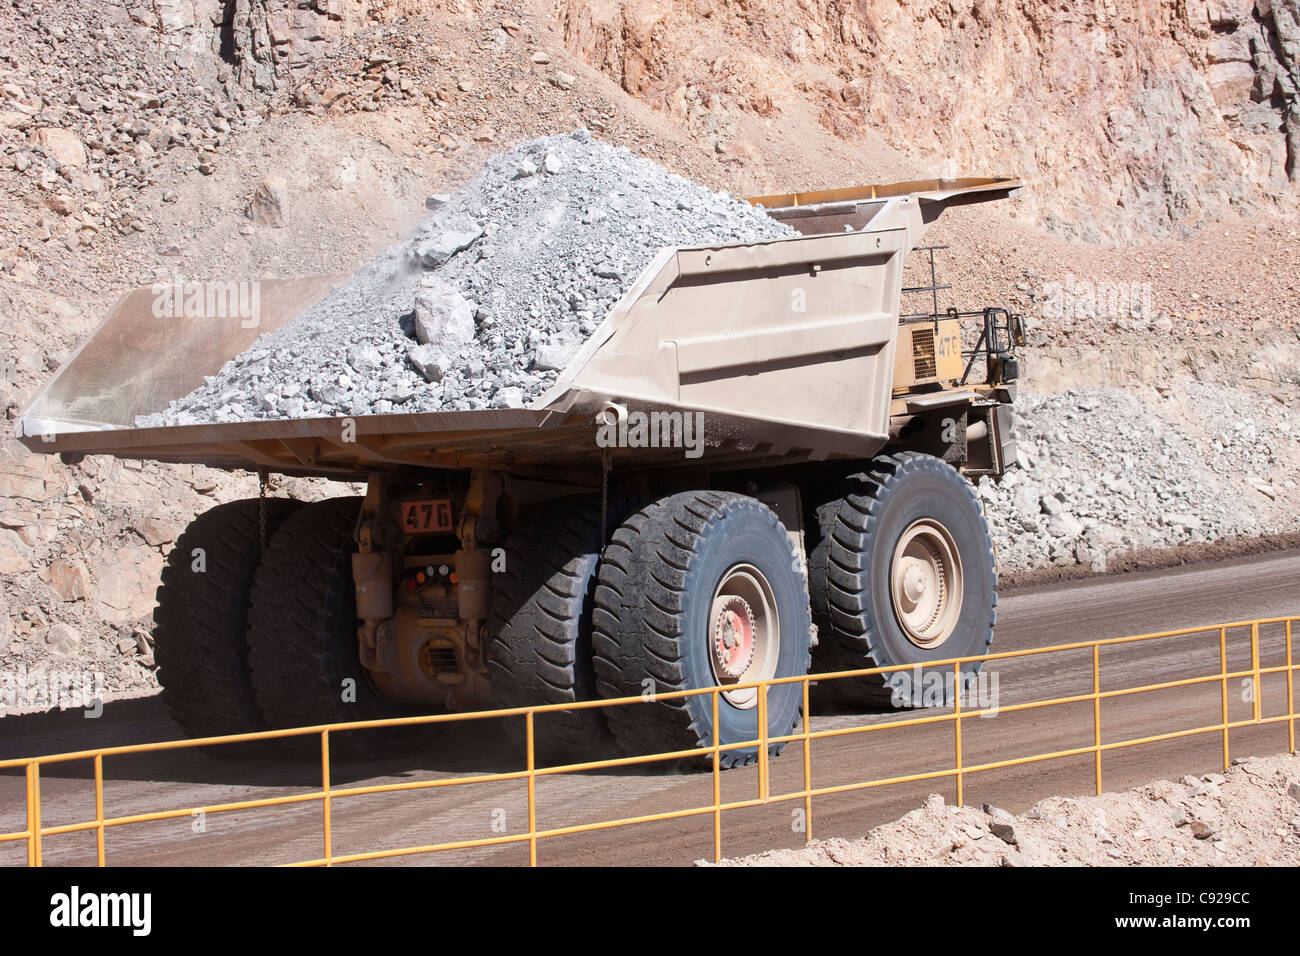 Chile, Chuquicamata, loaded truck at open pit copper mine Stock Photo